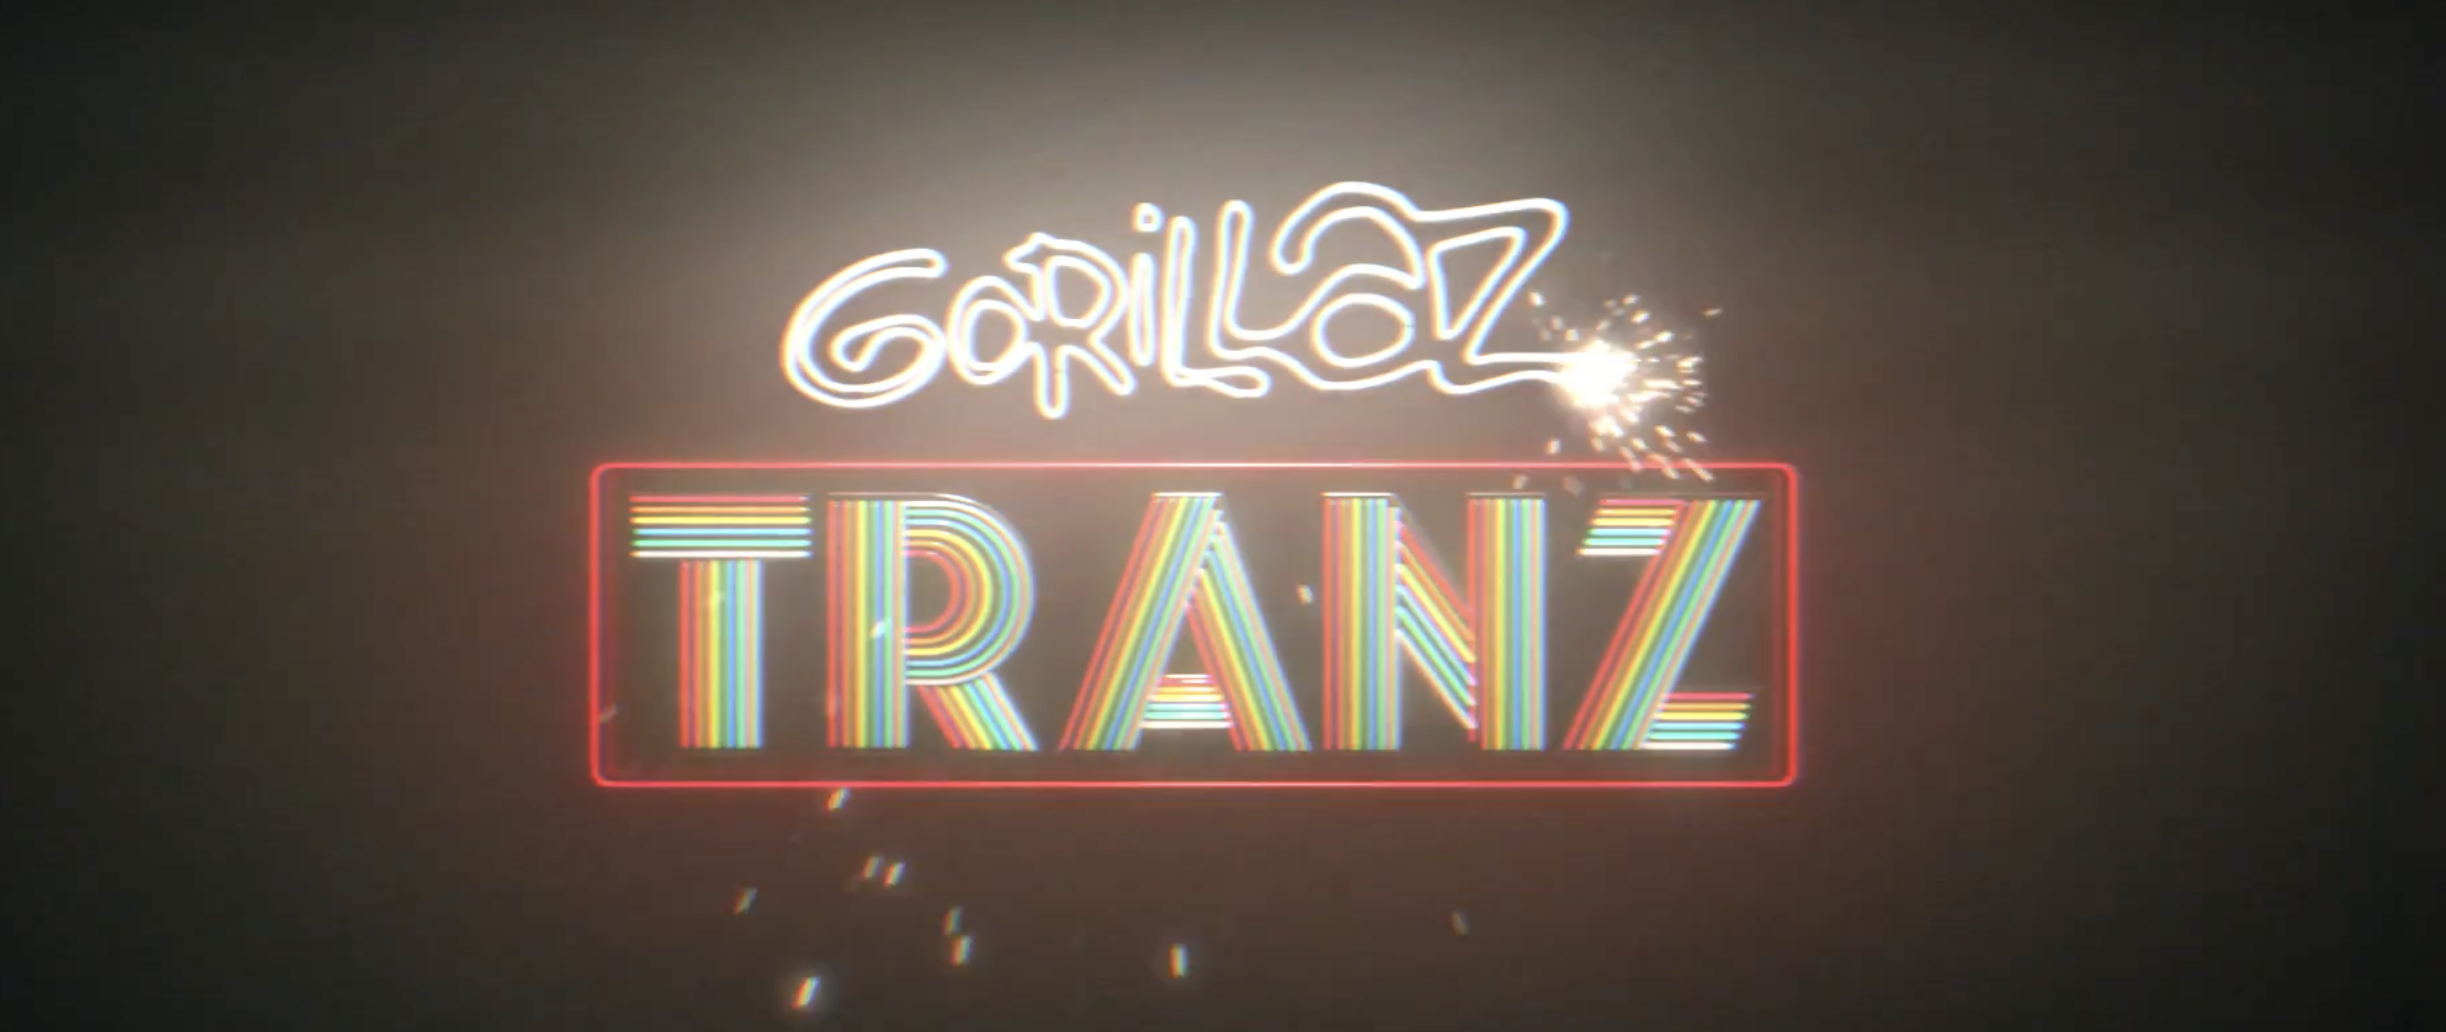 Gorillaz estrena video para TRANZ